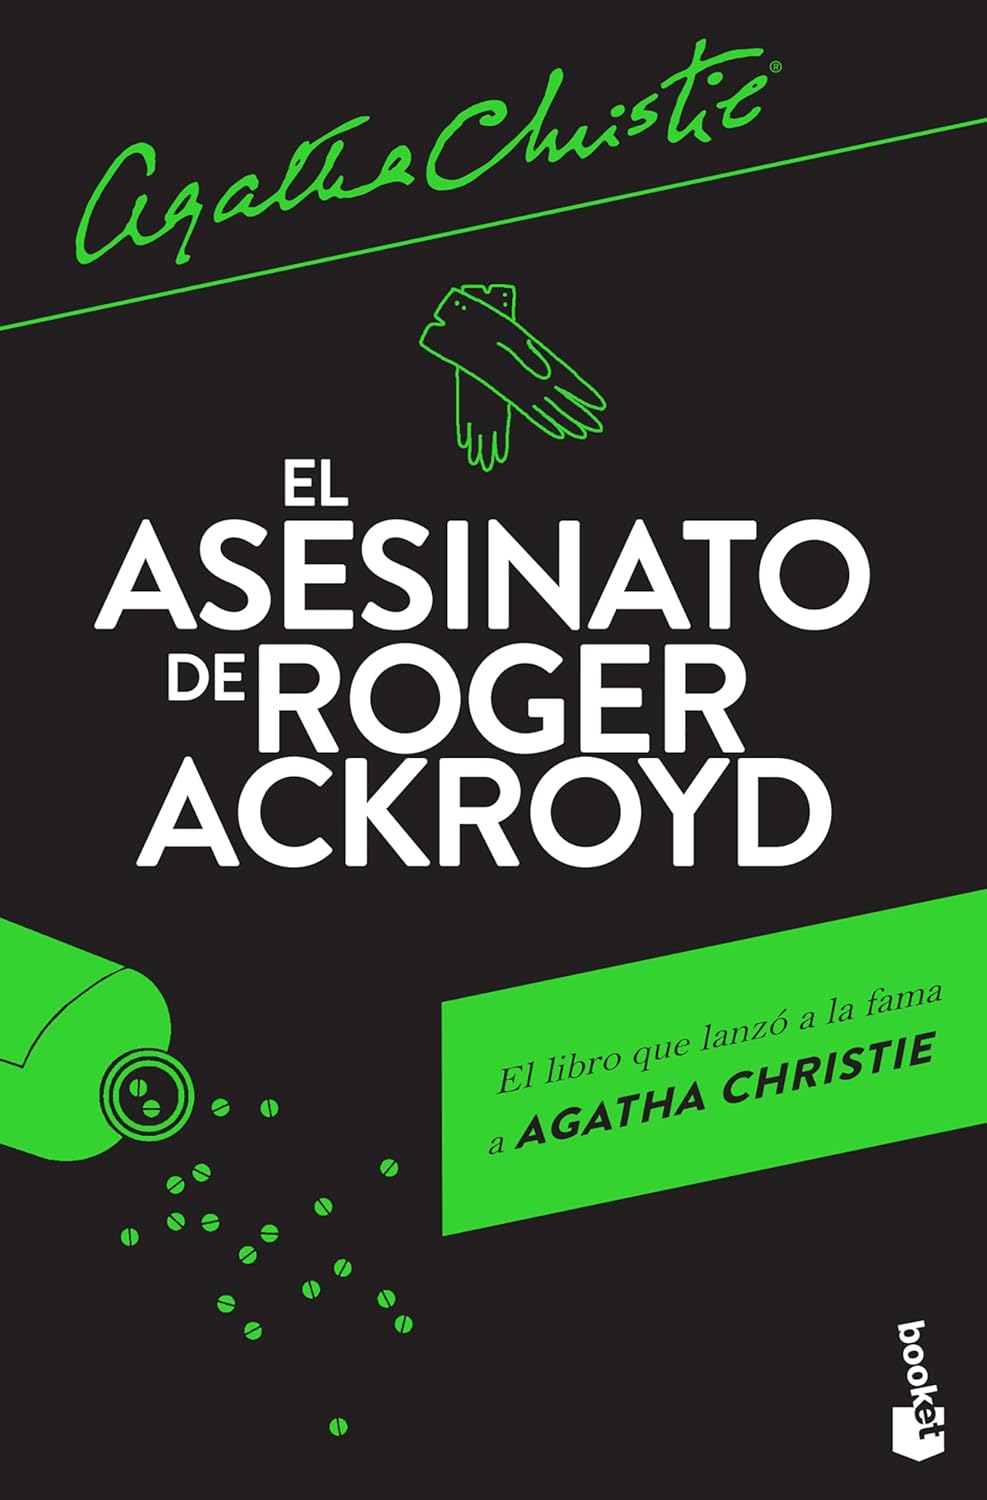 El asesinato de Roger Ackroyd de Agatha Christie